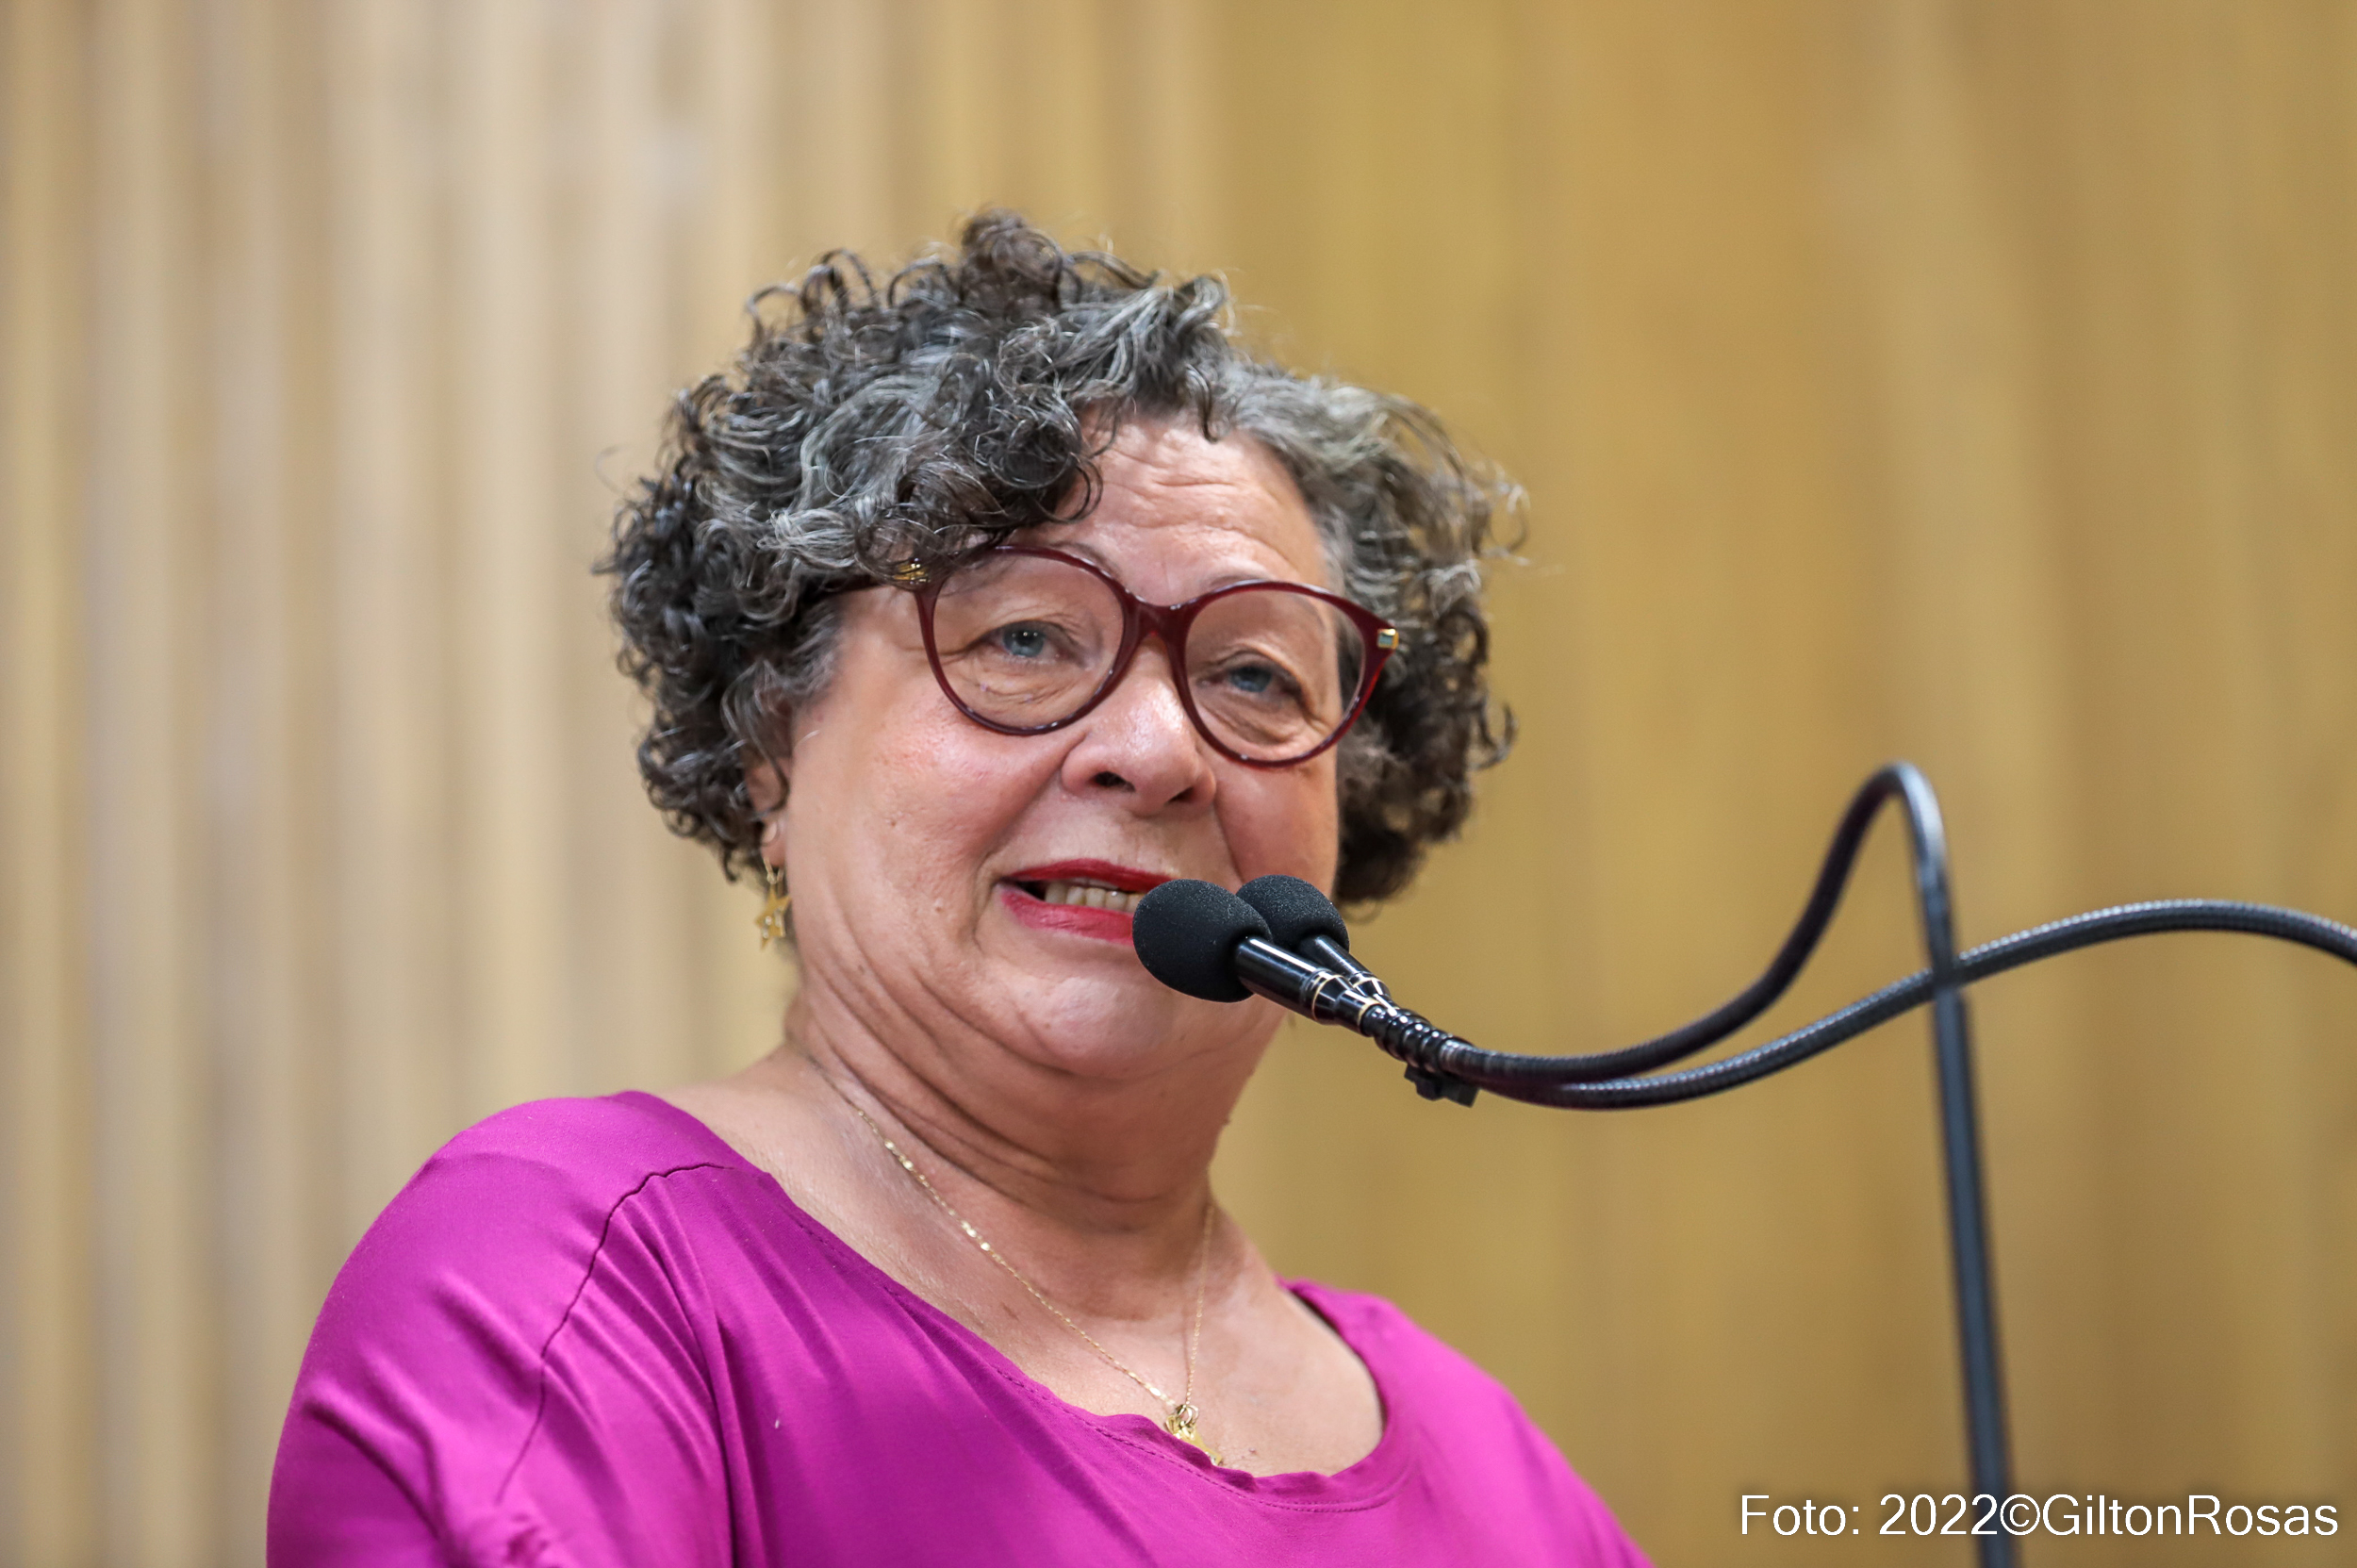 O ódio bolsonarista quer acabar com a liberdade religiosa e de culto, diz Professora Ângela Melo